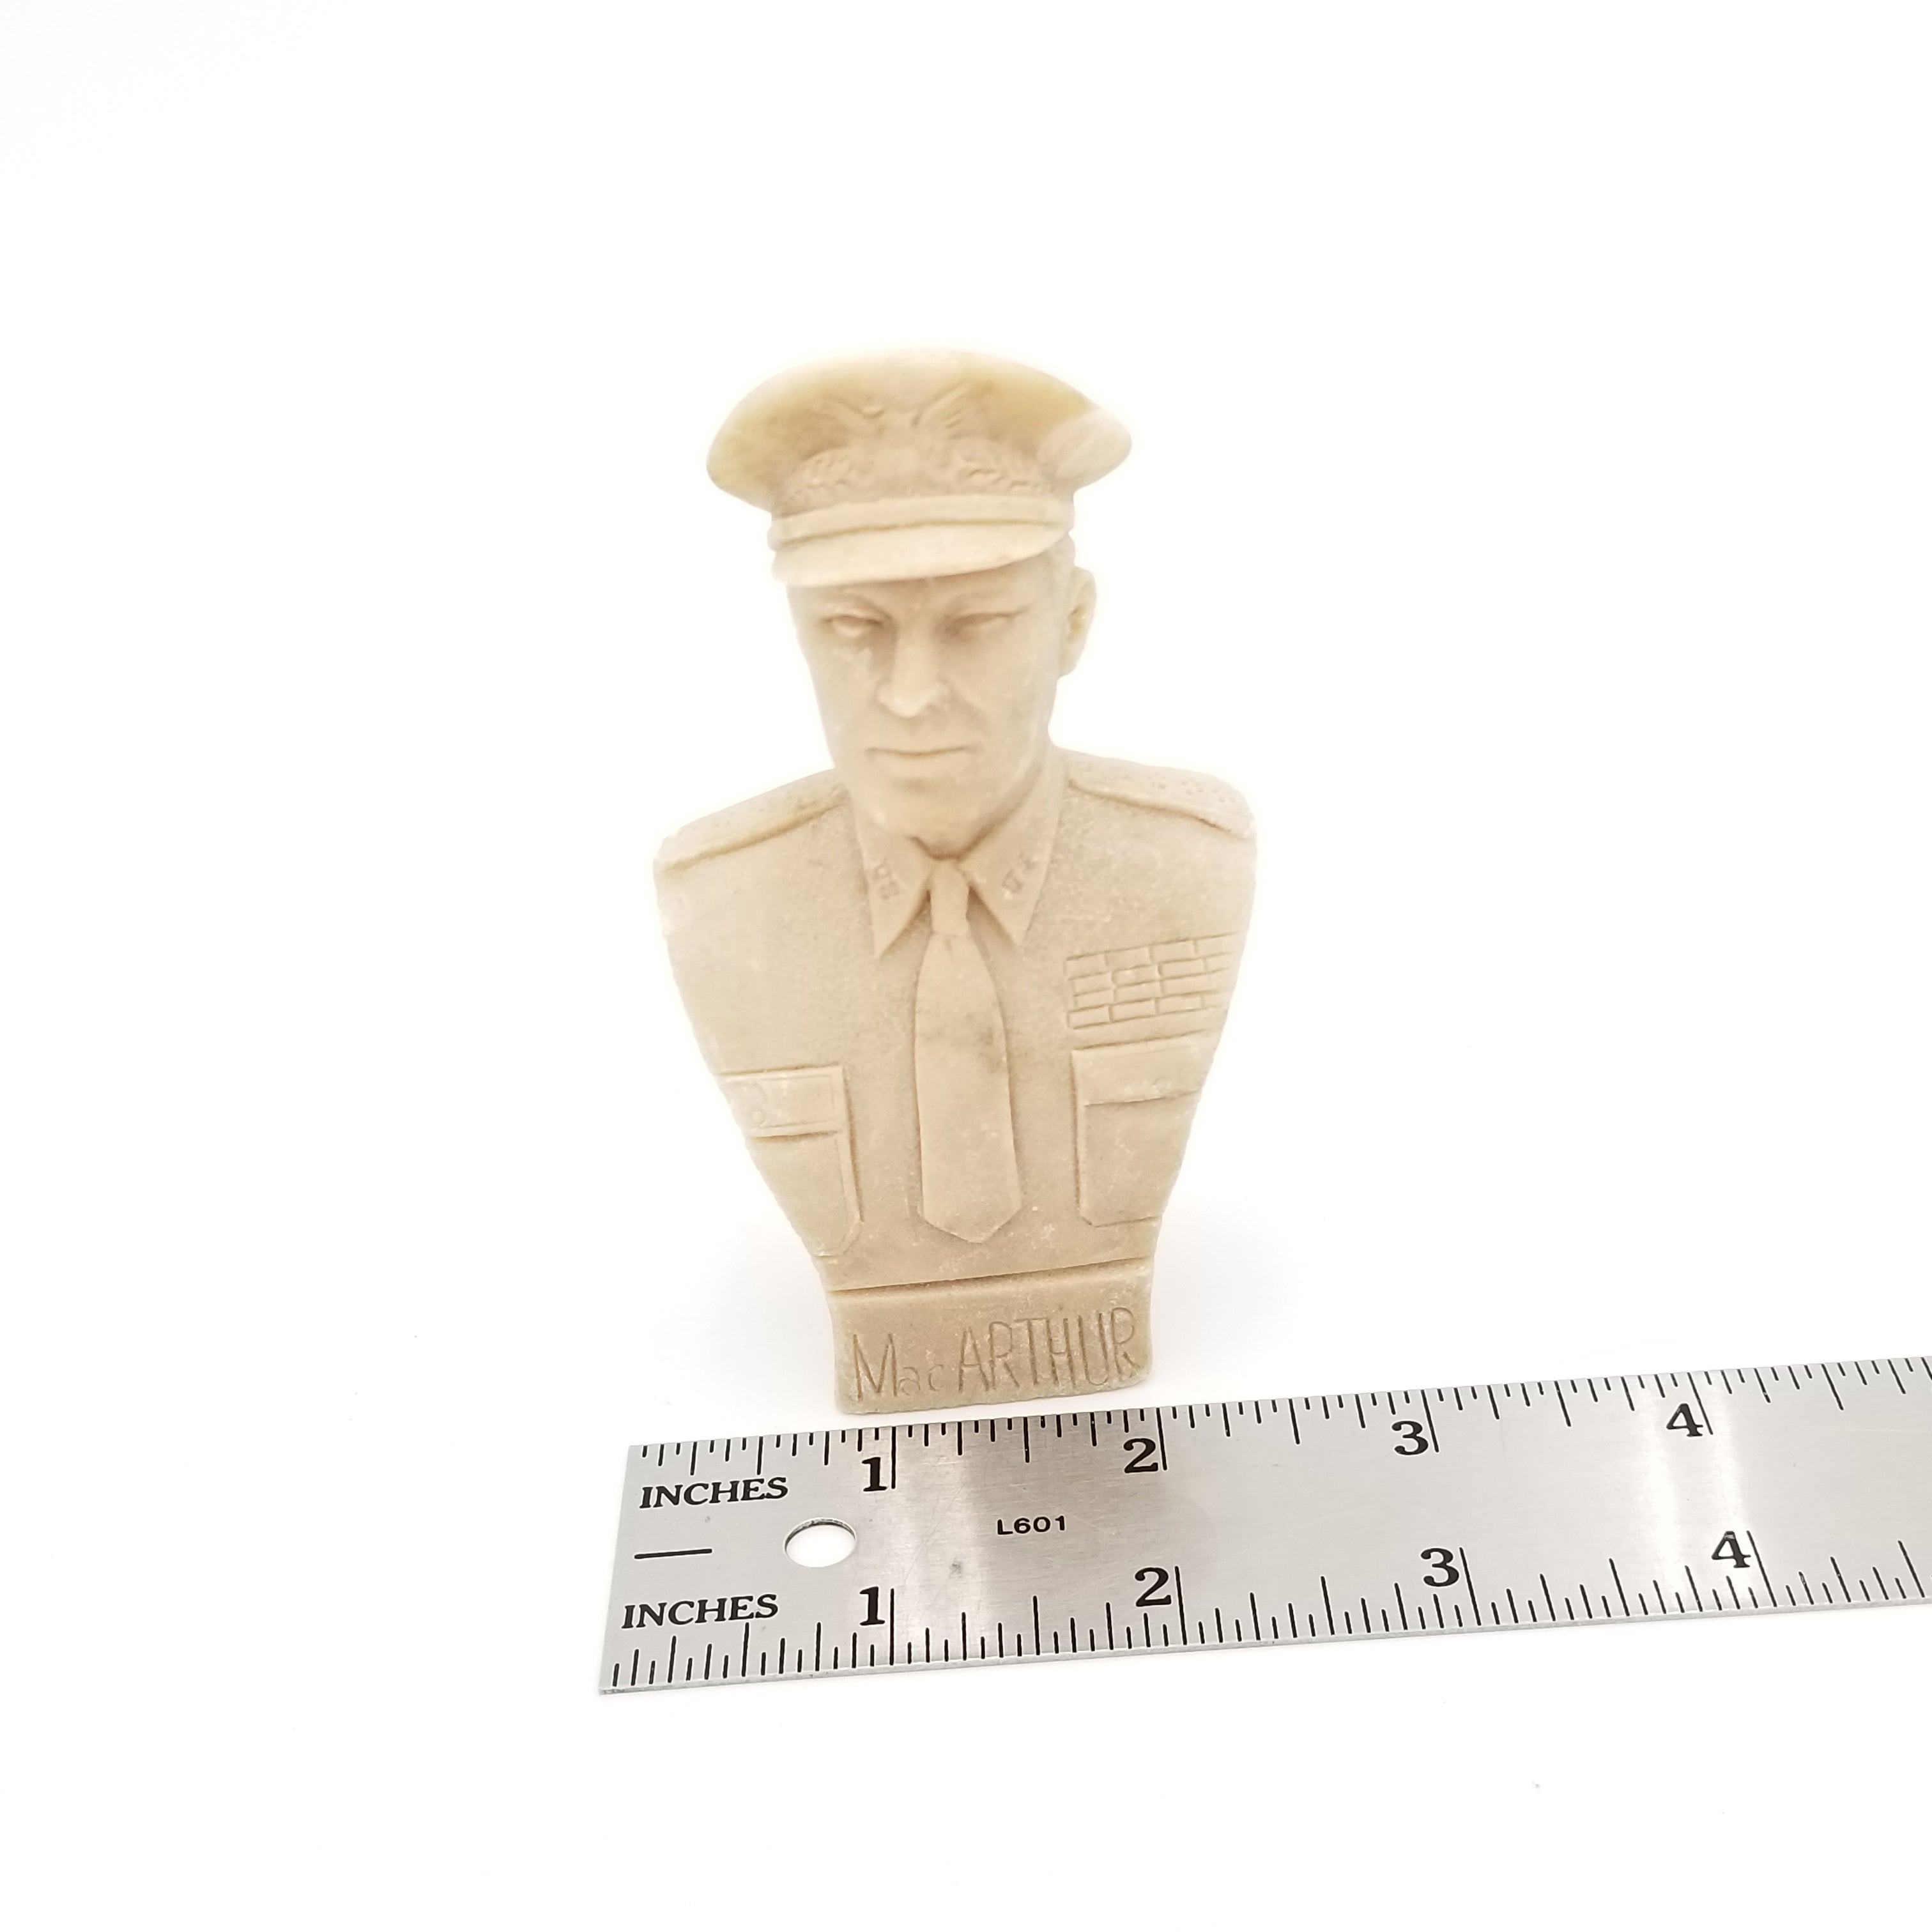 General Douglas MacArthur Figurine